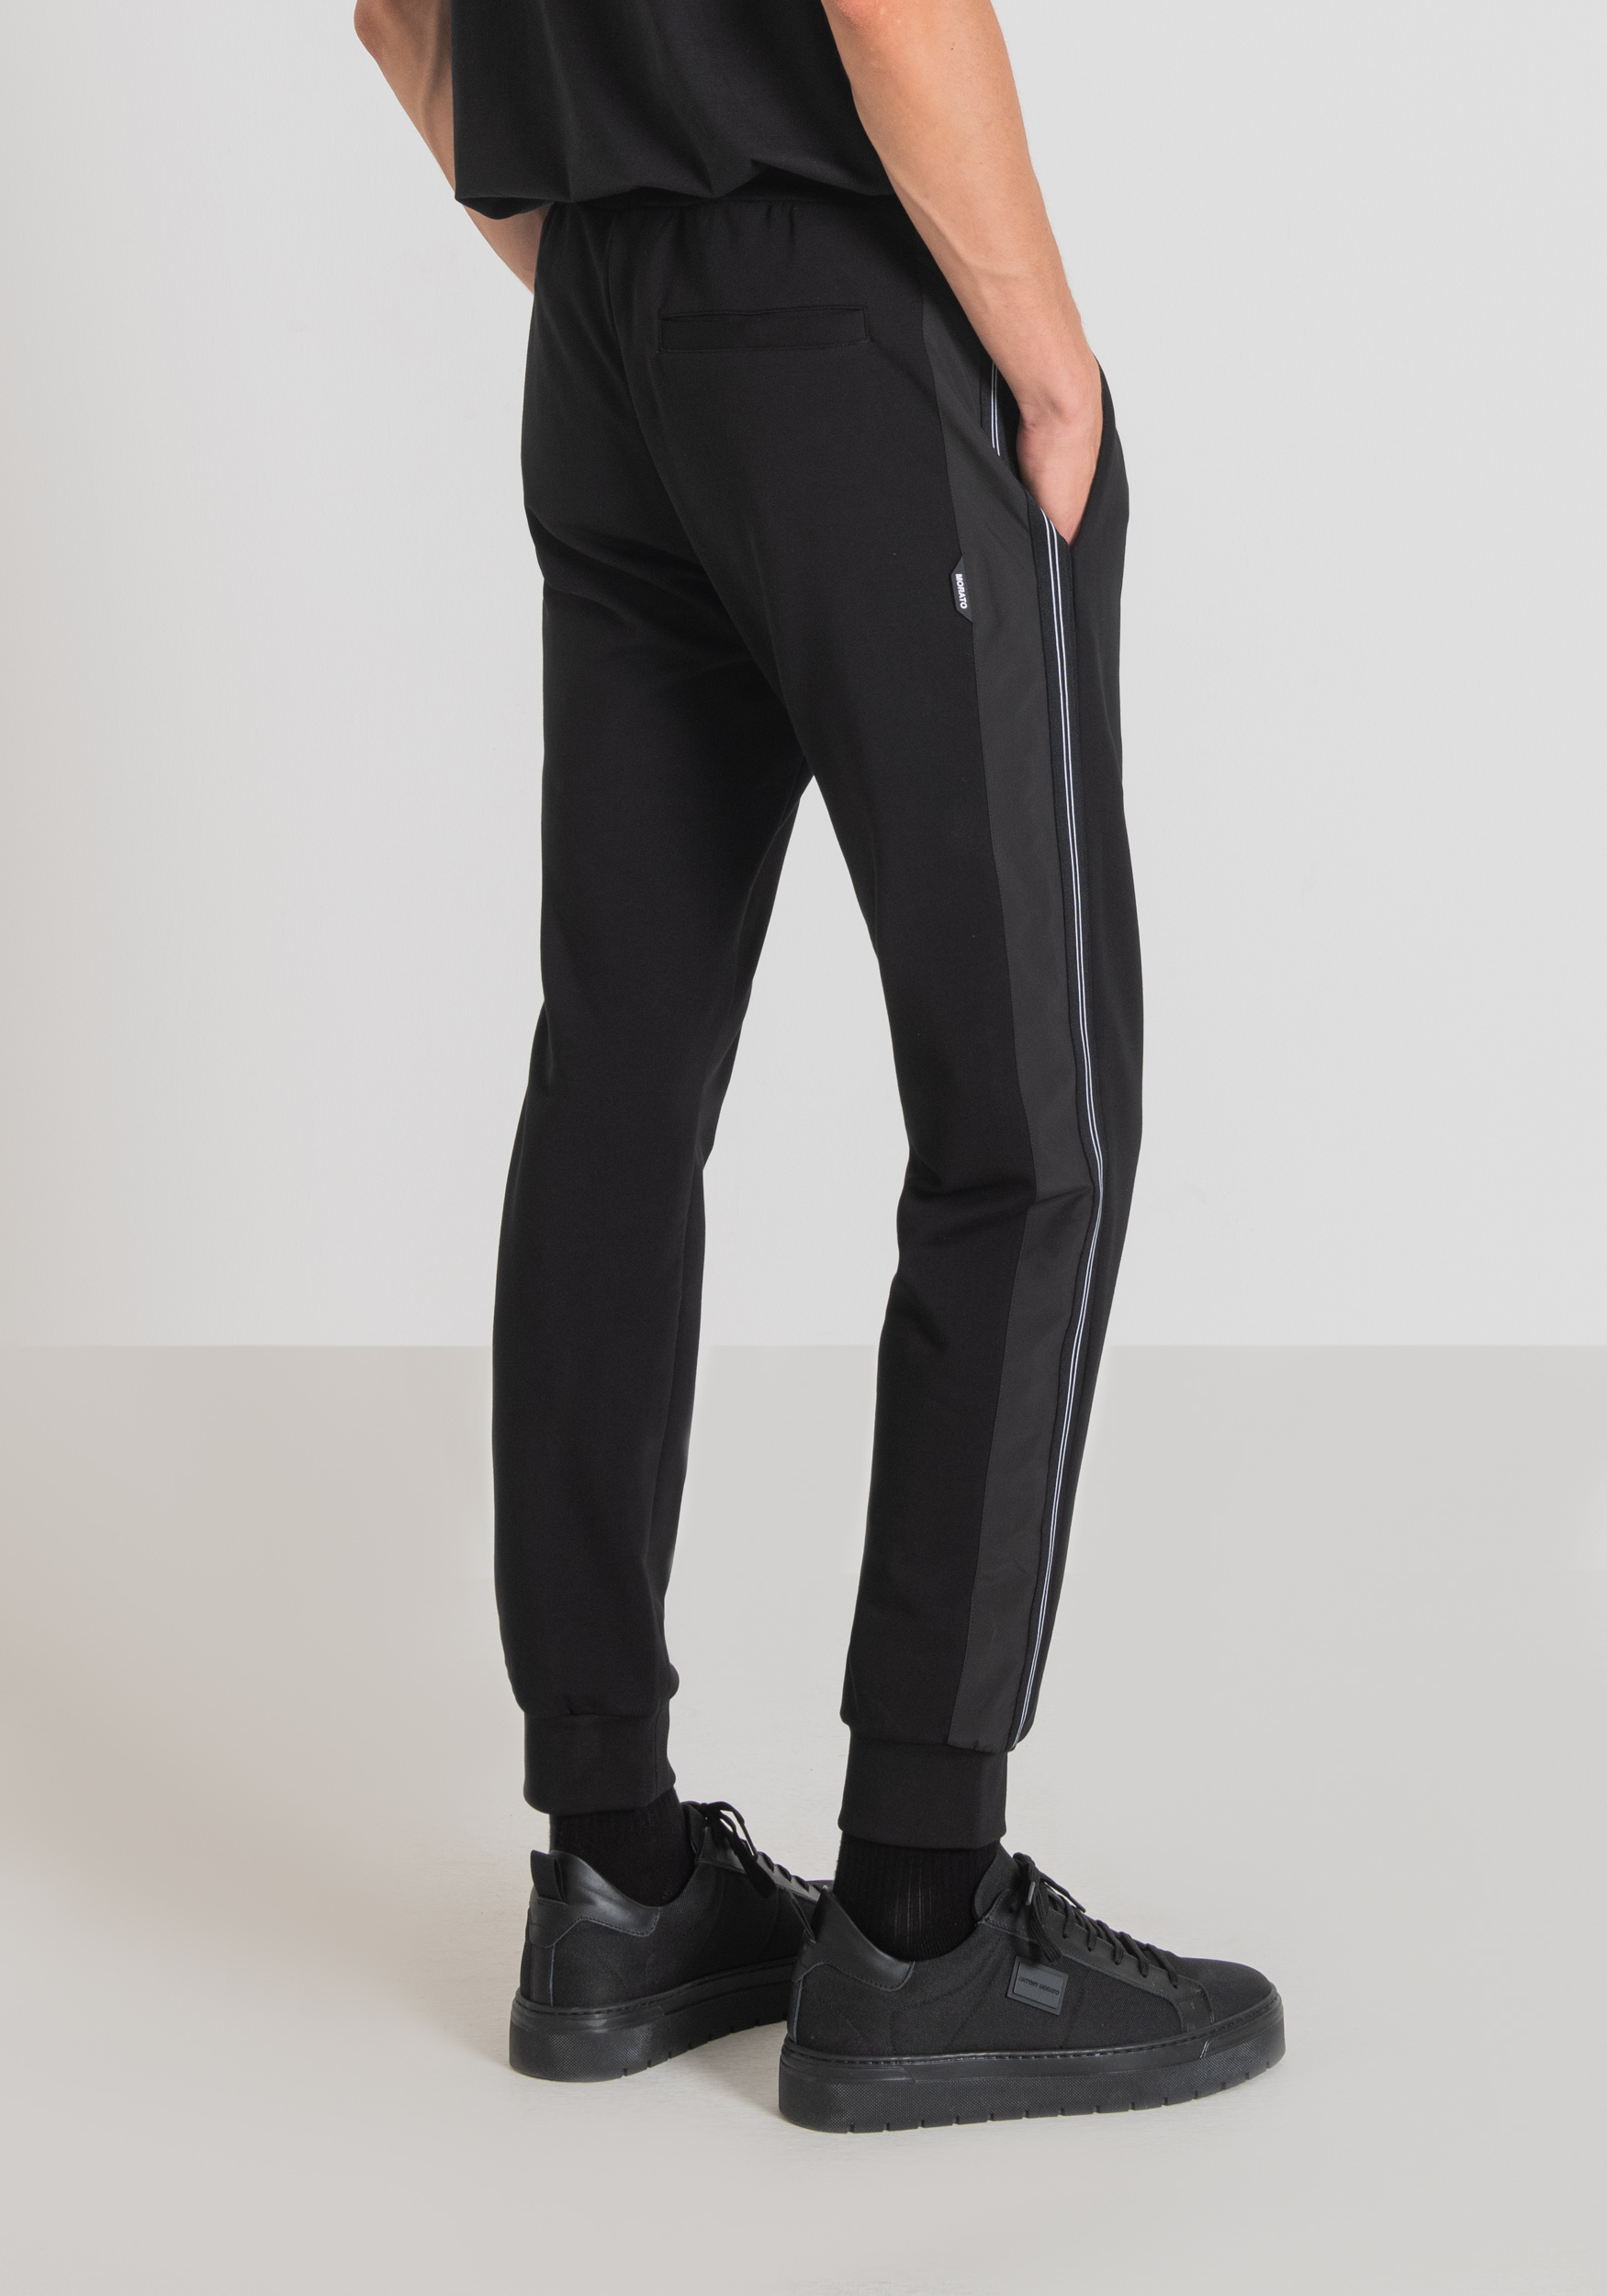 Pantalon jogging slim noir uni type sweat molleton pour homme – MY-LOOK